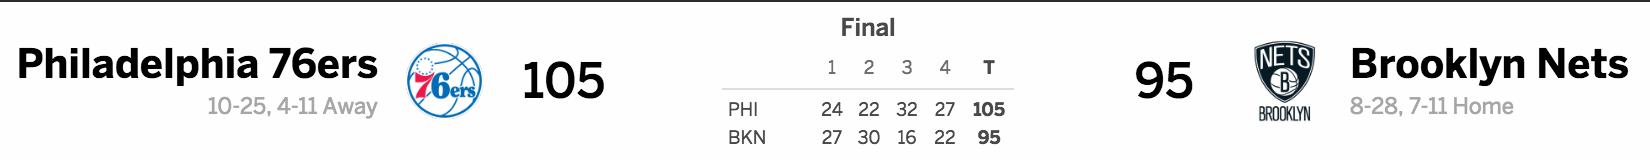 Brooklyn Nets vs. Philadelphia 76ers 01-08-17 Score